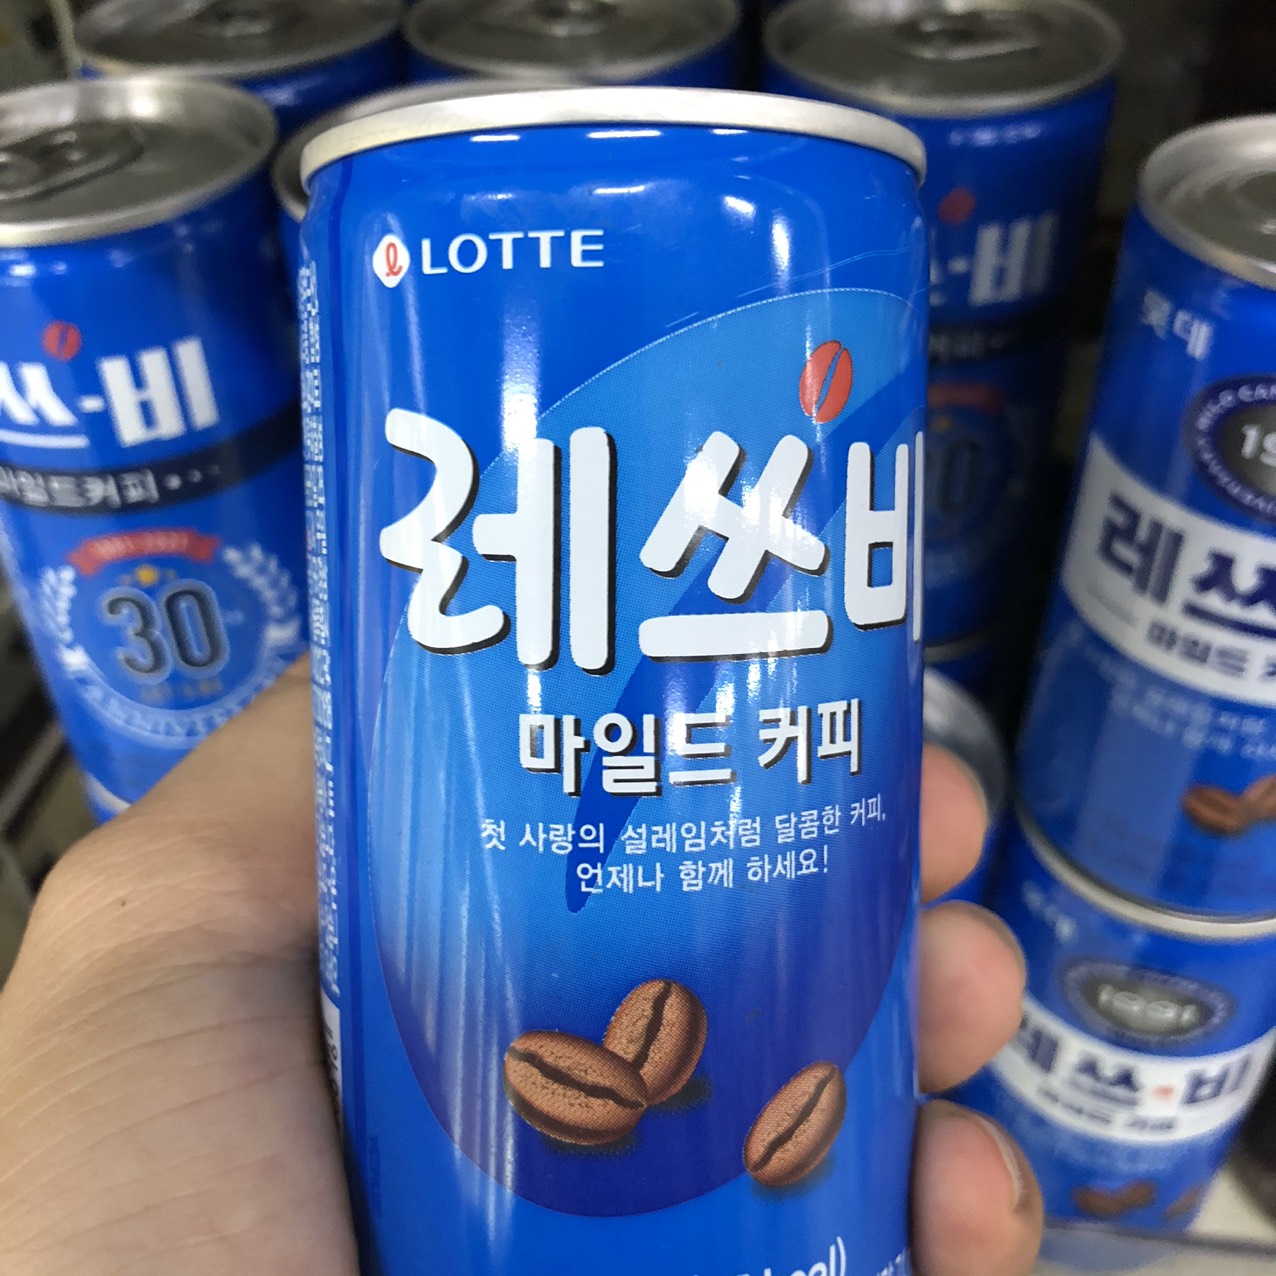 Cà Phê Uống Liền Let's Be Milk Lotte Hàn Quốc Lon 175ml